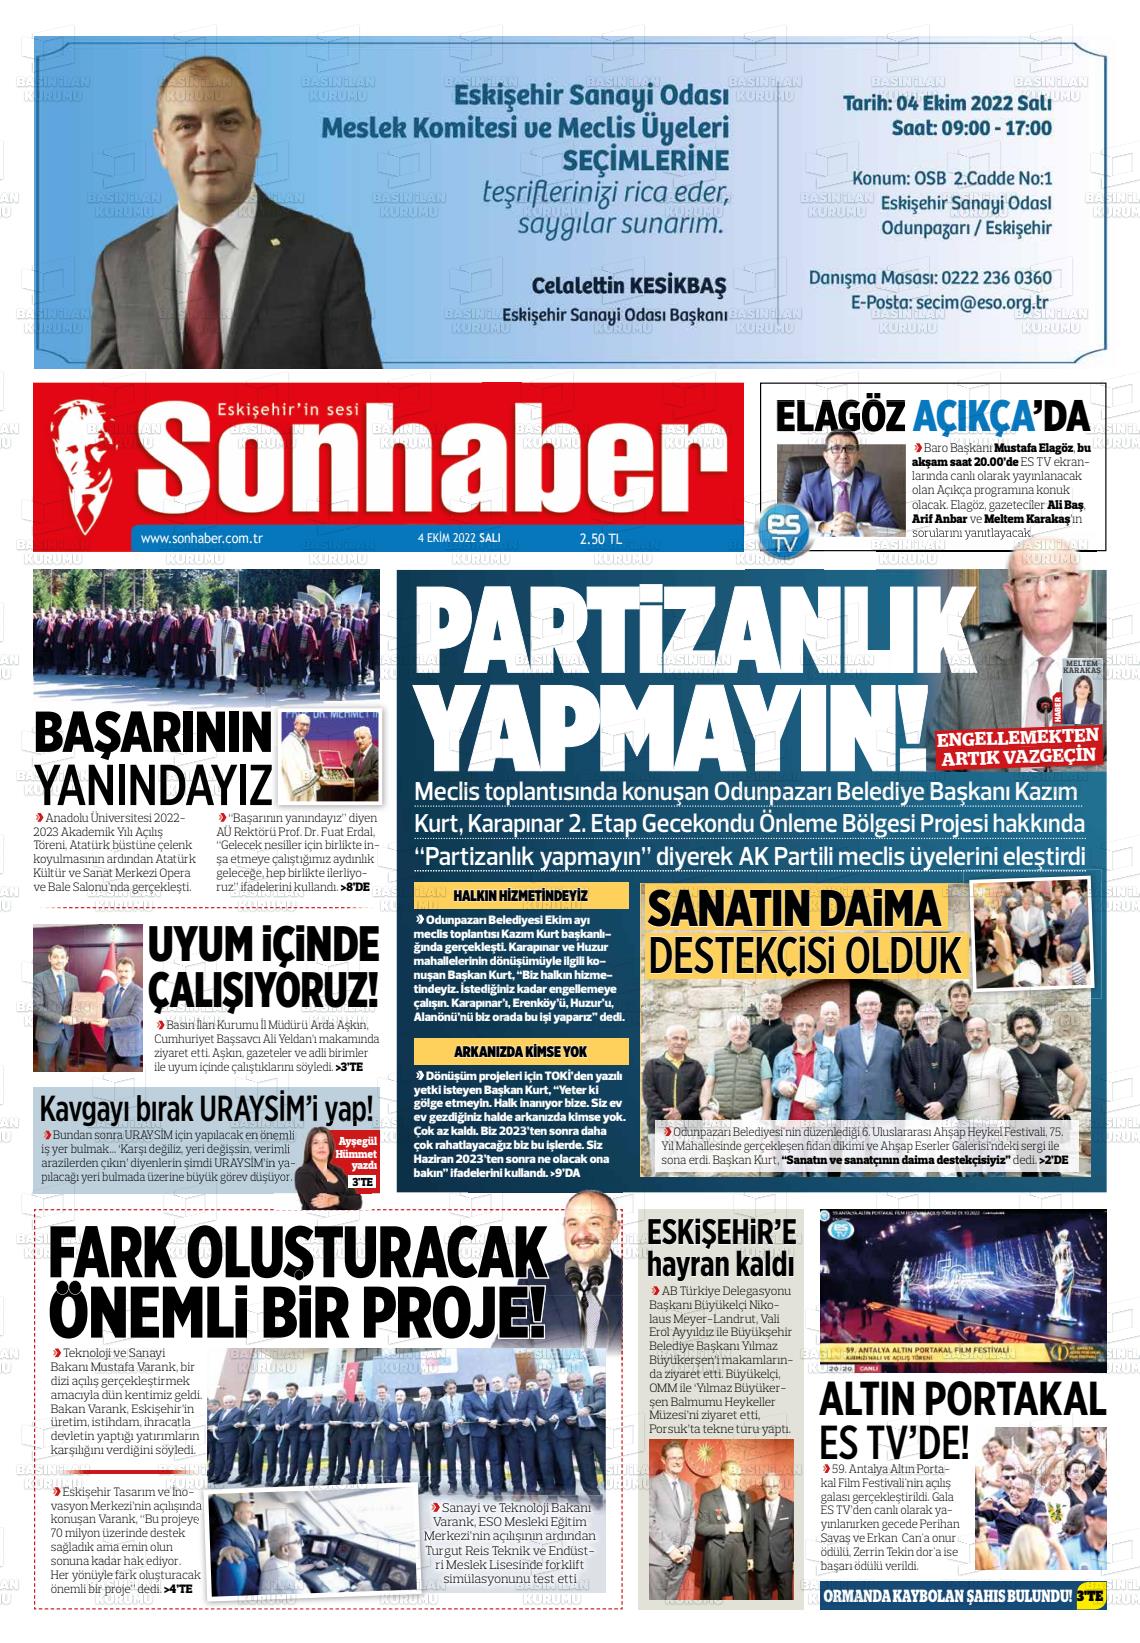 04 Ekim 2022 Eskişehir Son Haber Gazete Manşeti